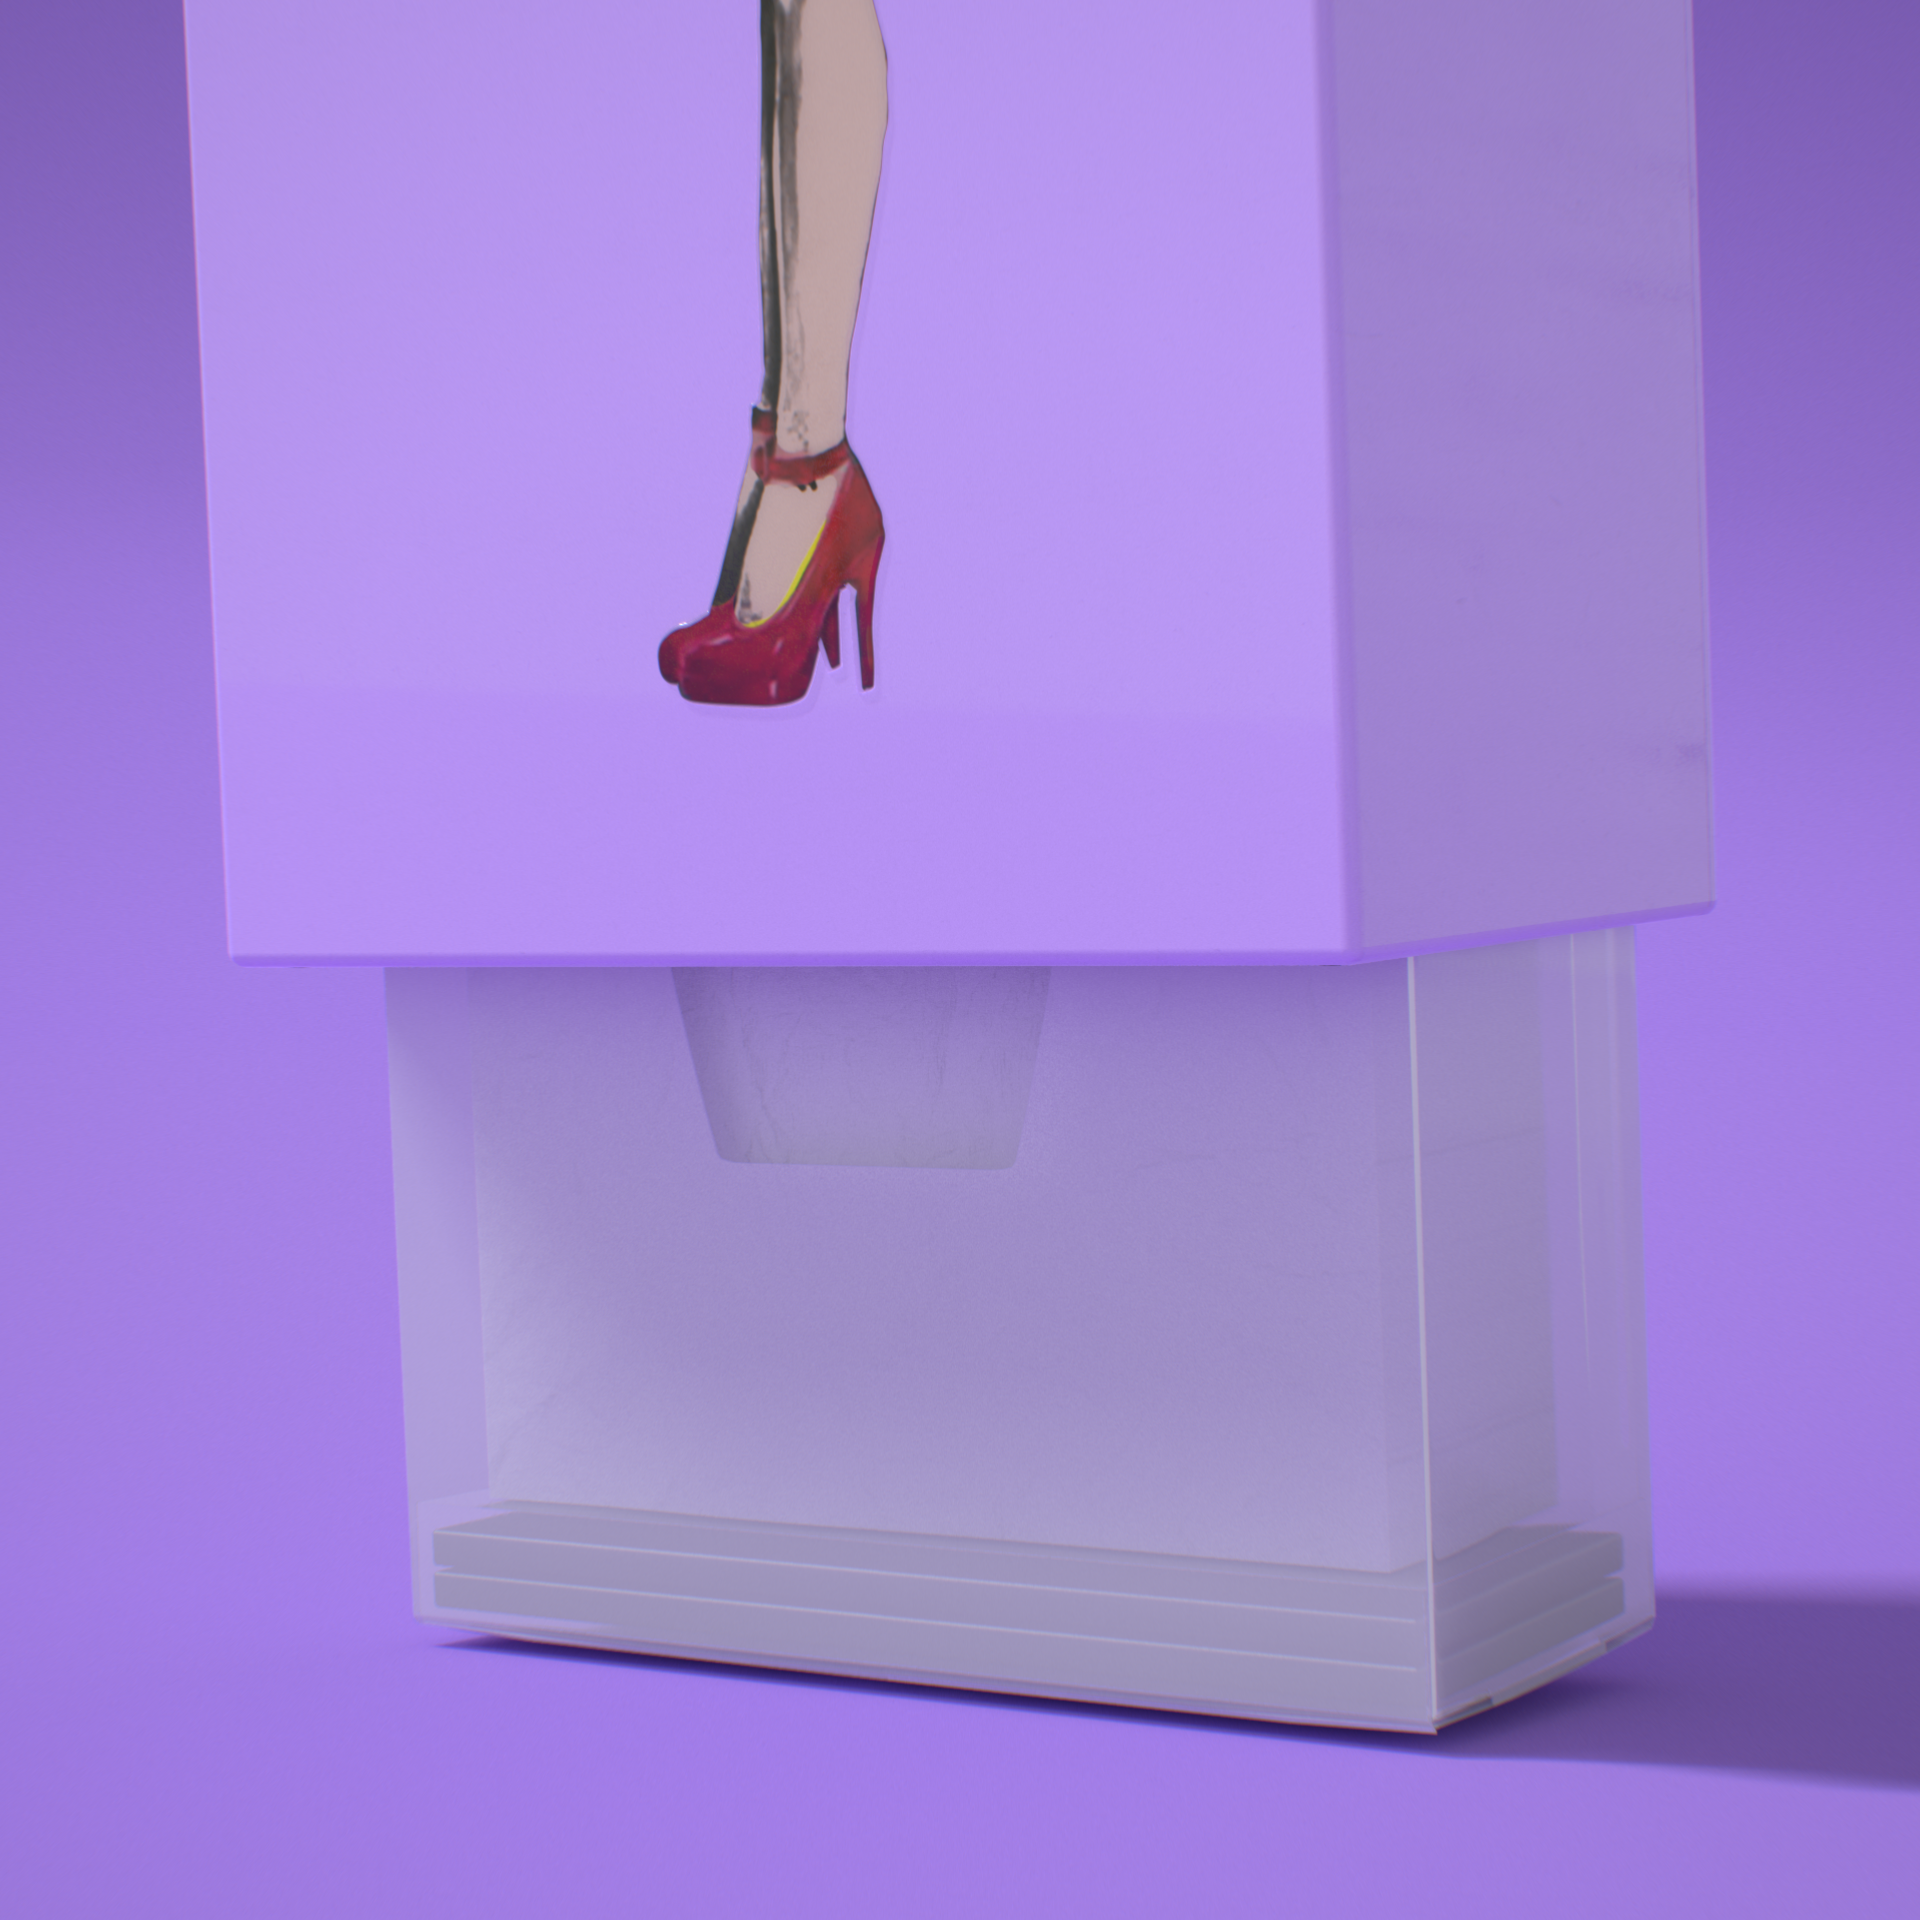 韓國 SPEXTRUM 蓬蓬裙女郎造型面紙盒(紫色)